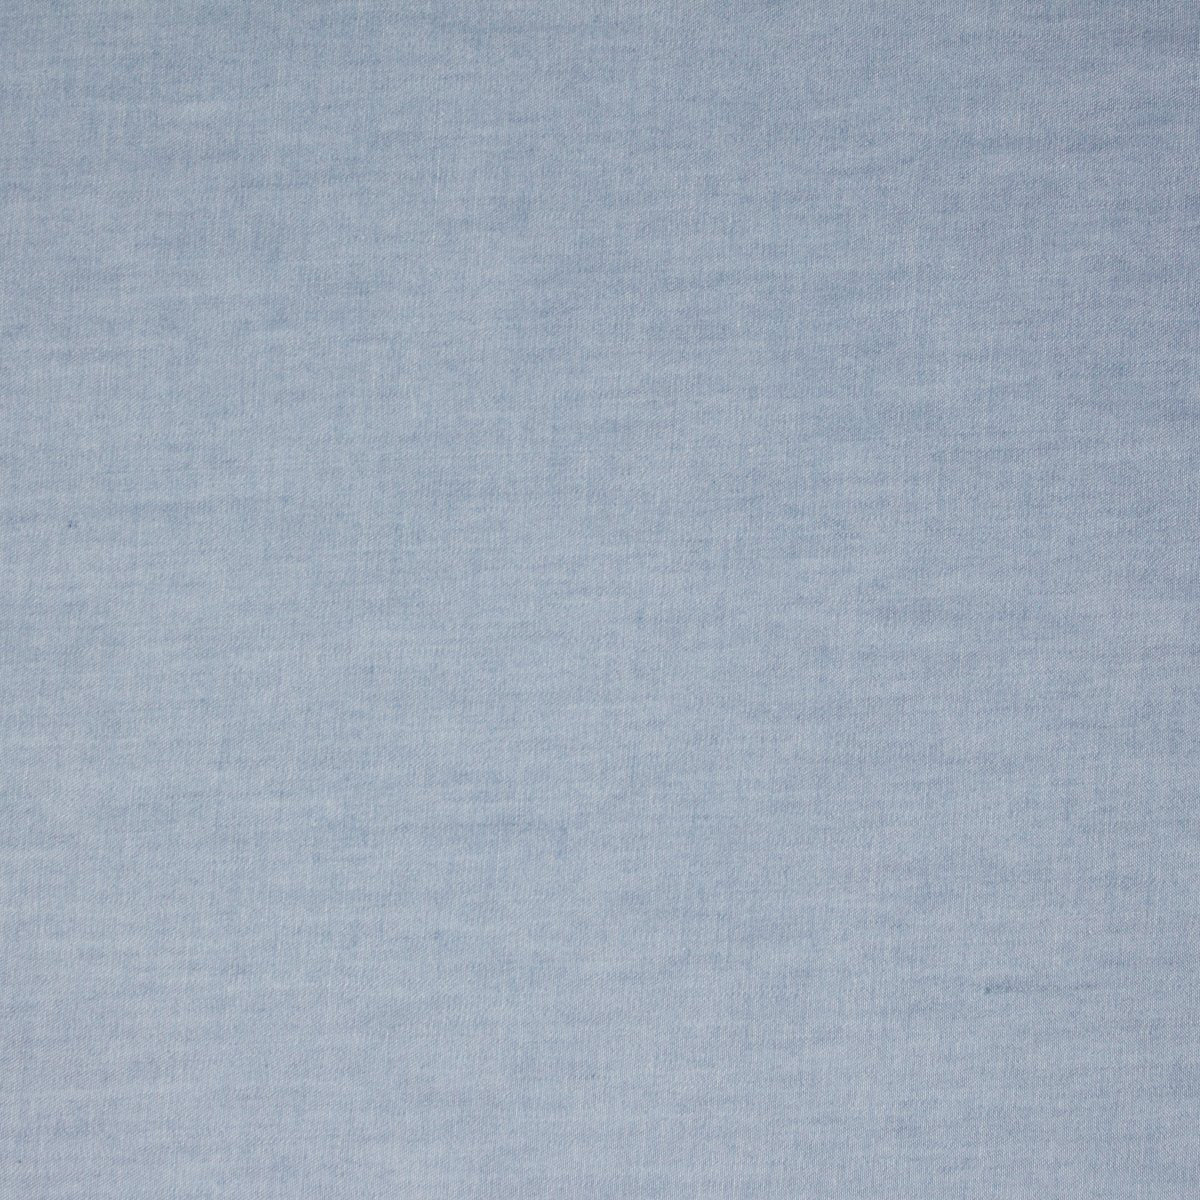 Deep Cove Denim 5oz Classic Blue ½ yd-Fabric-Spool of Thread